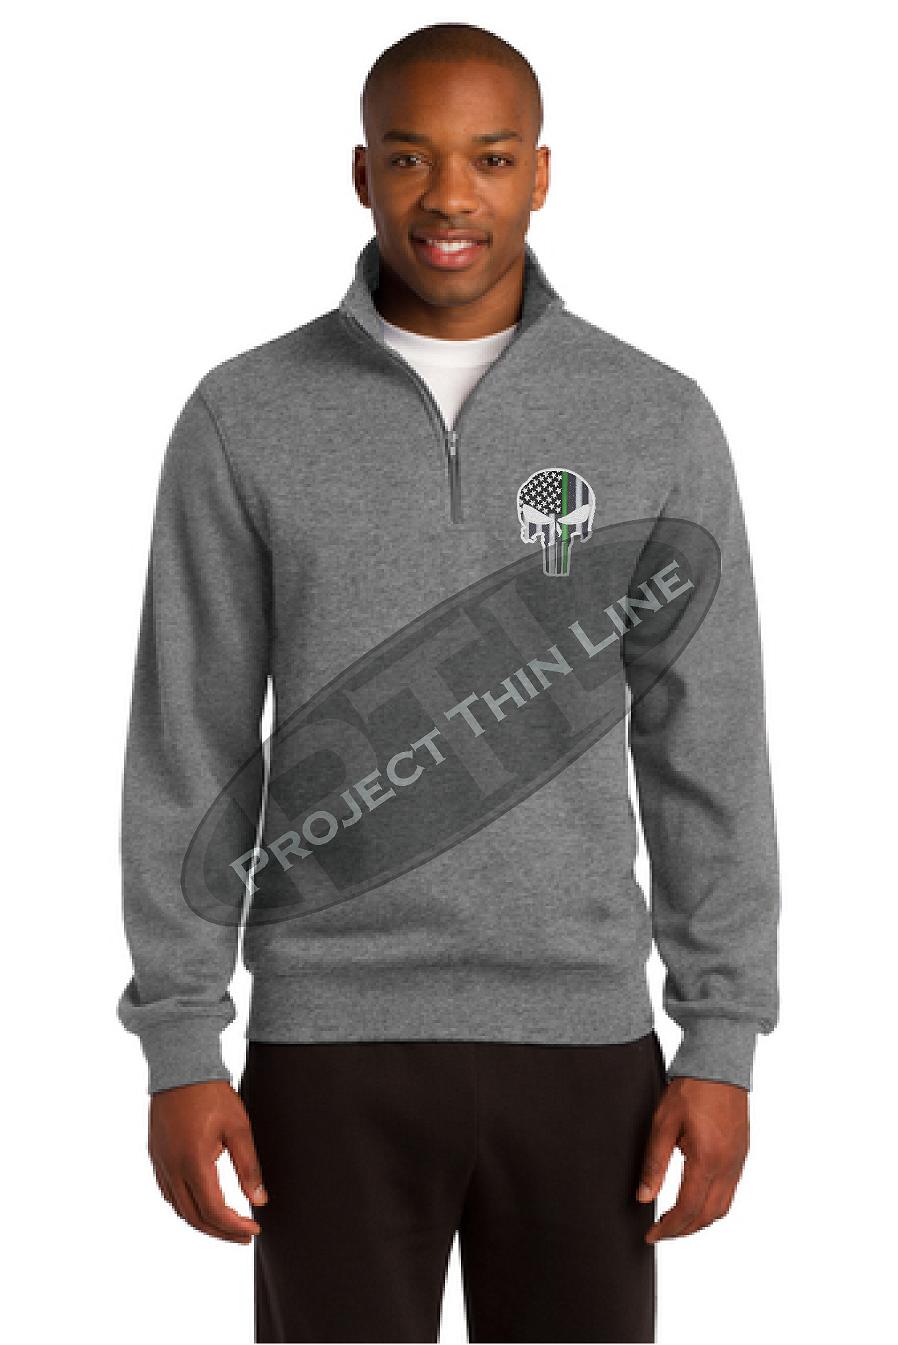 Black Thin Green Line Skull Punisher 1/4 Zip Fleece Sweatshirt